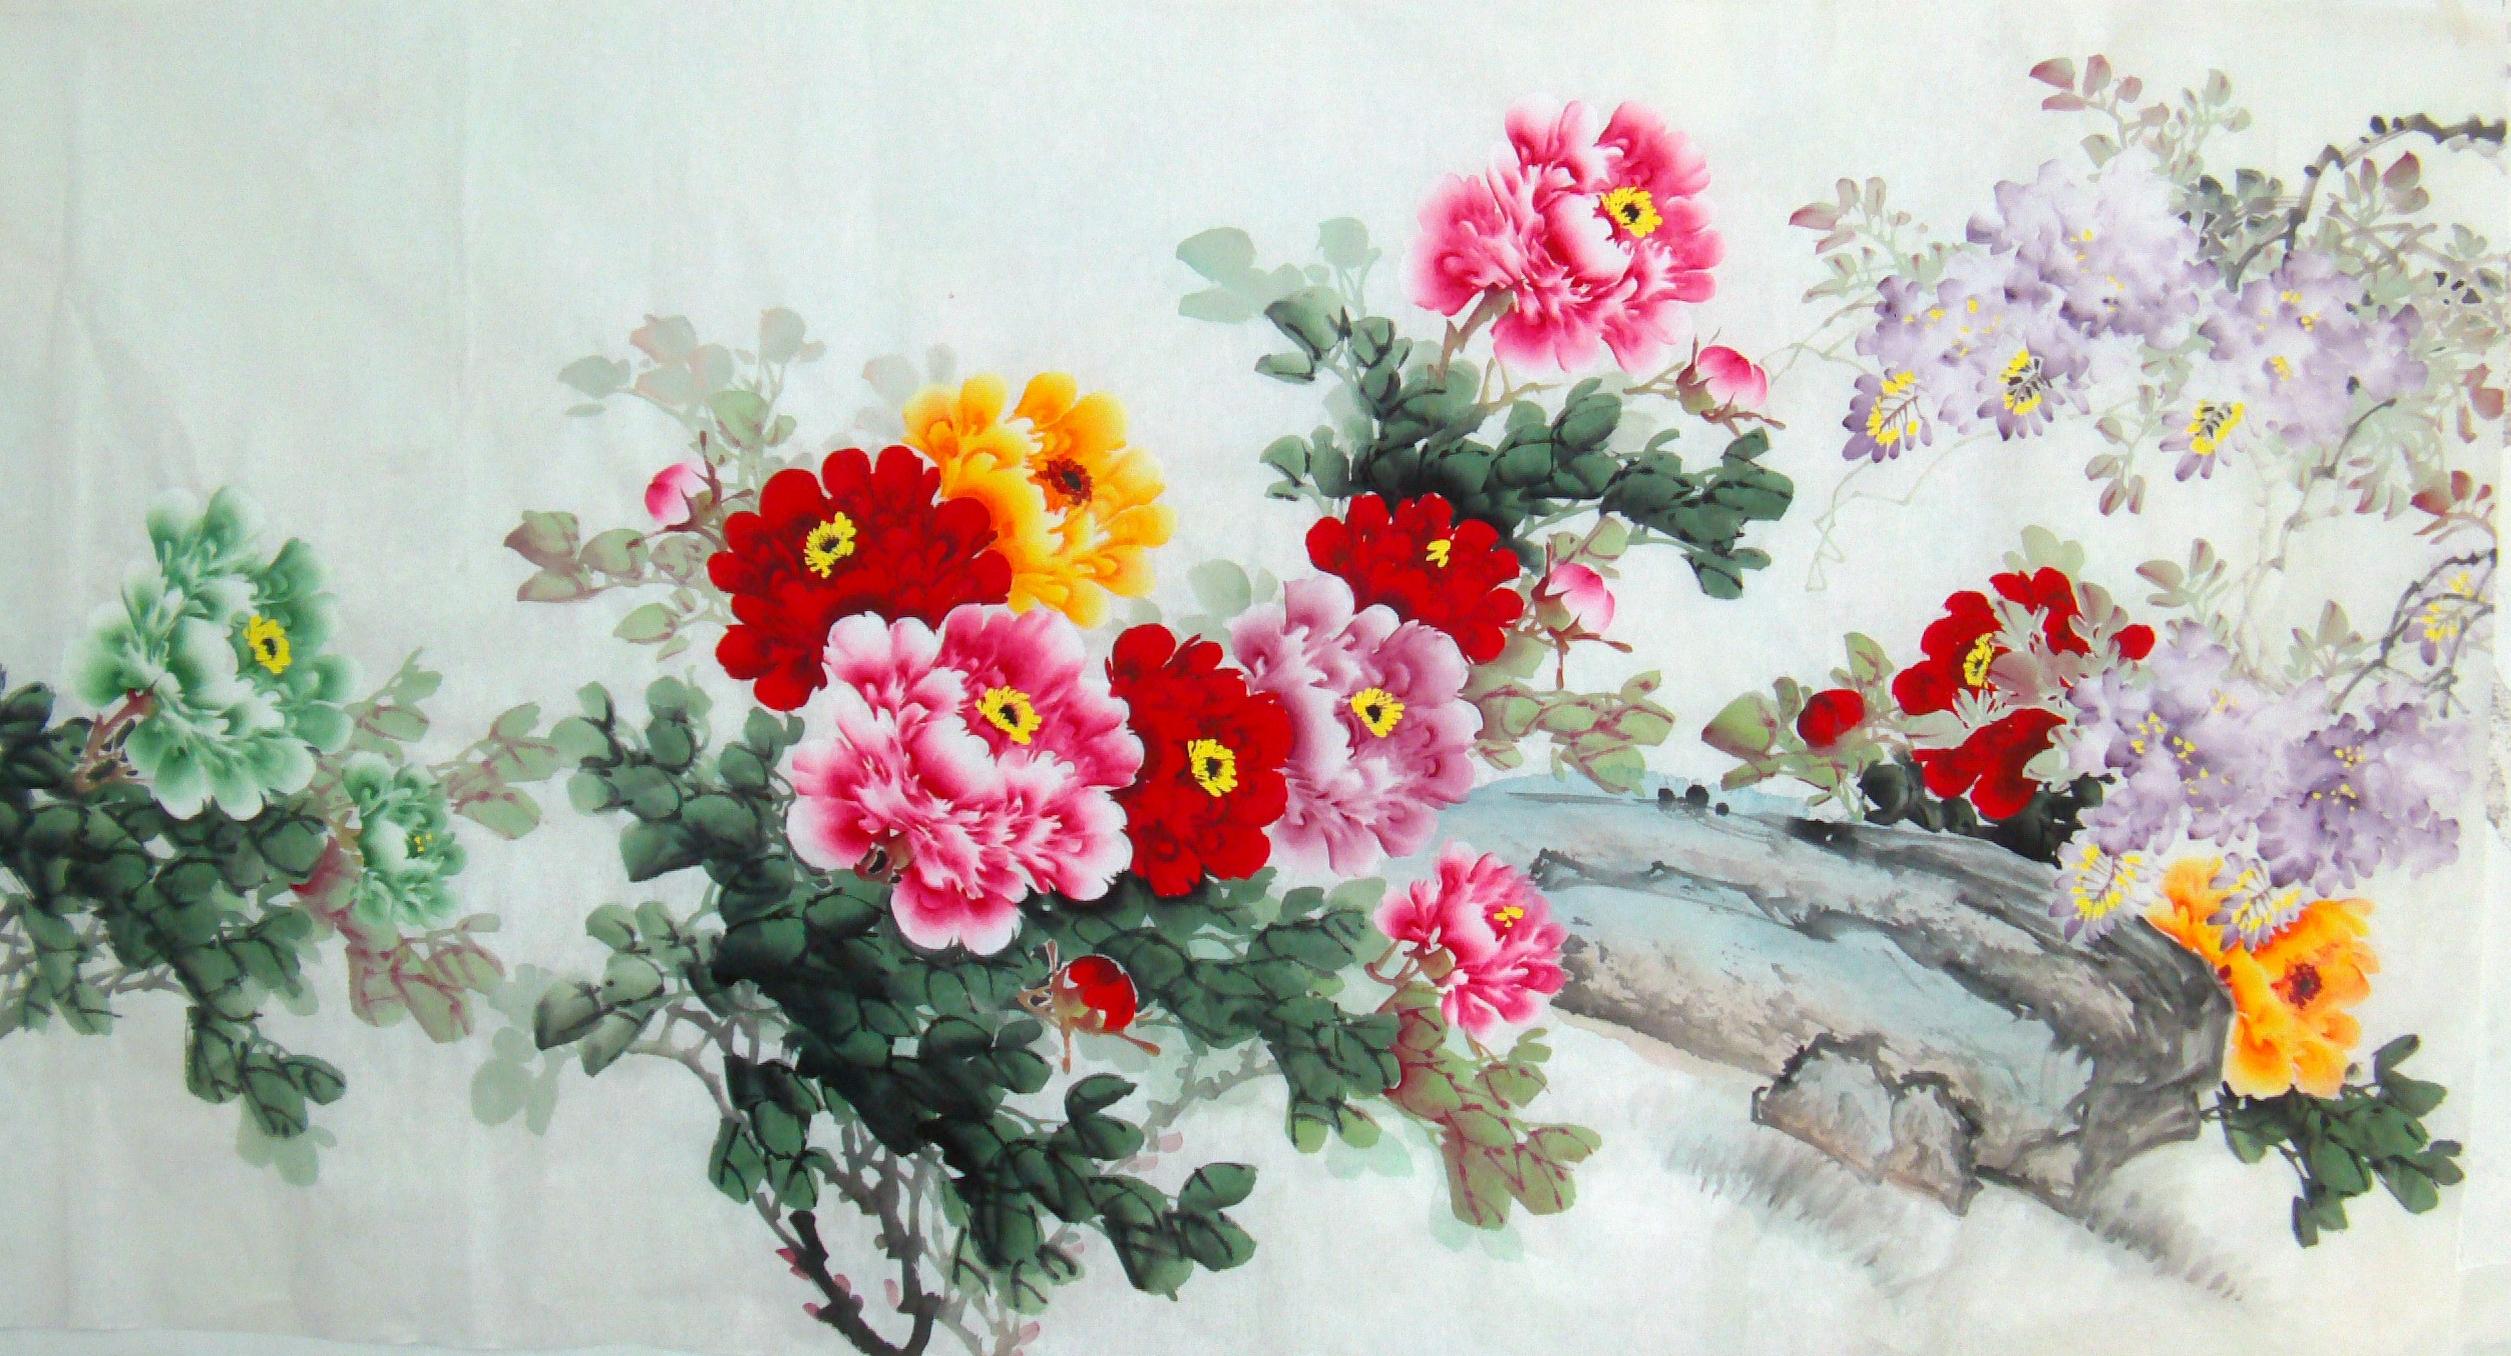 中国画 国画牡丹 写意牡丹画 花鸟画 名家牡丹画 手绘 宋亚宗牡丹画